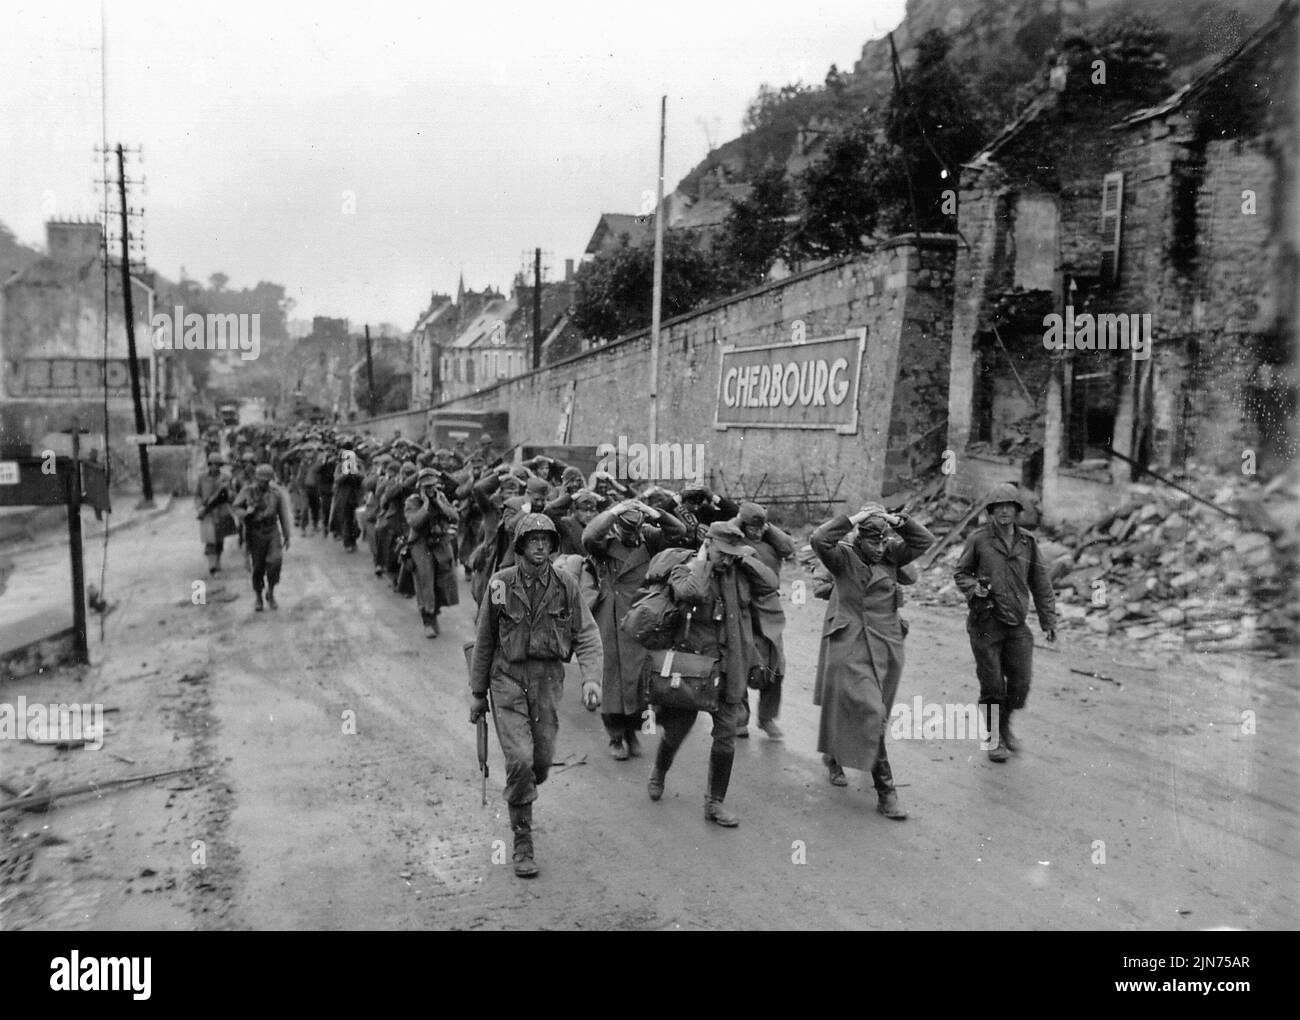 CHERBOURG, FRANKREICH - 28. Juni 1944 - Soldaten der US-Armee marschieren Kriegsgefangene der deutschen Armee aus Cherbourg, Frankreich, kurz nachdem sie die Stadt während der Normandie I besetzt hatten Stockfoto